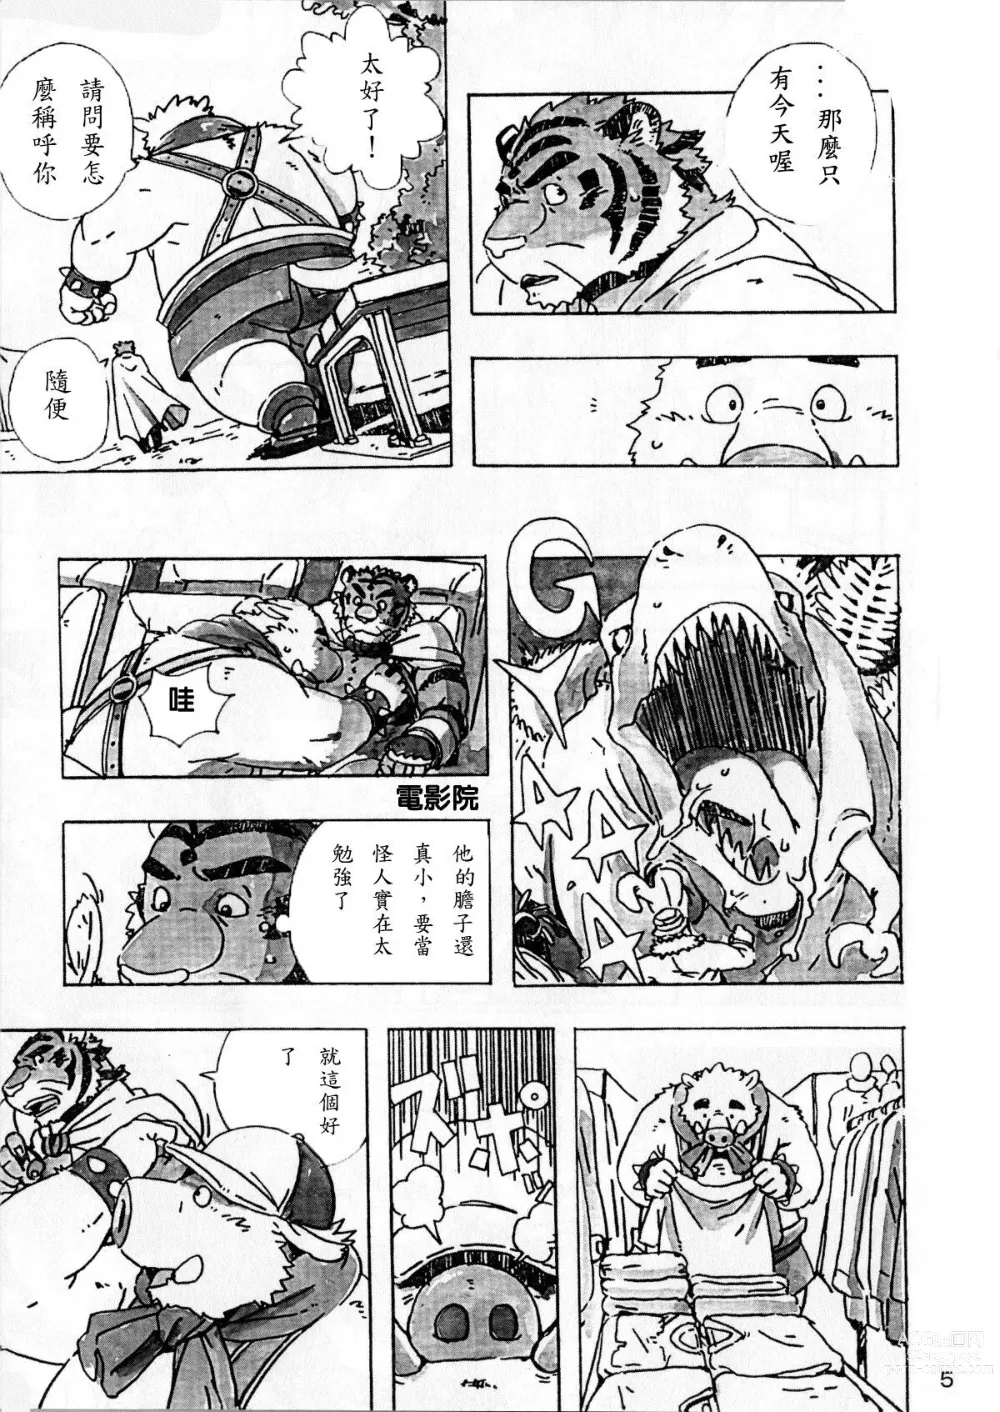 Page 6 of doujinshi Choujuu Gasshin Build Tiger 6